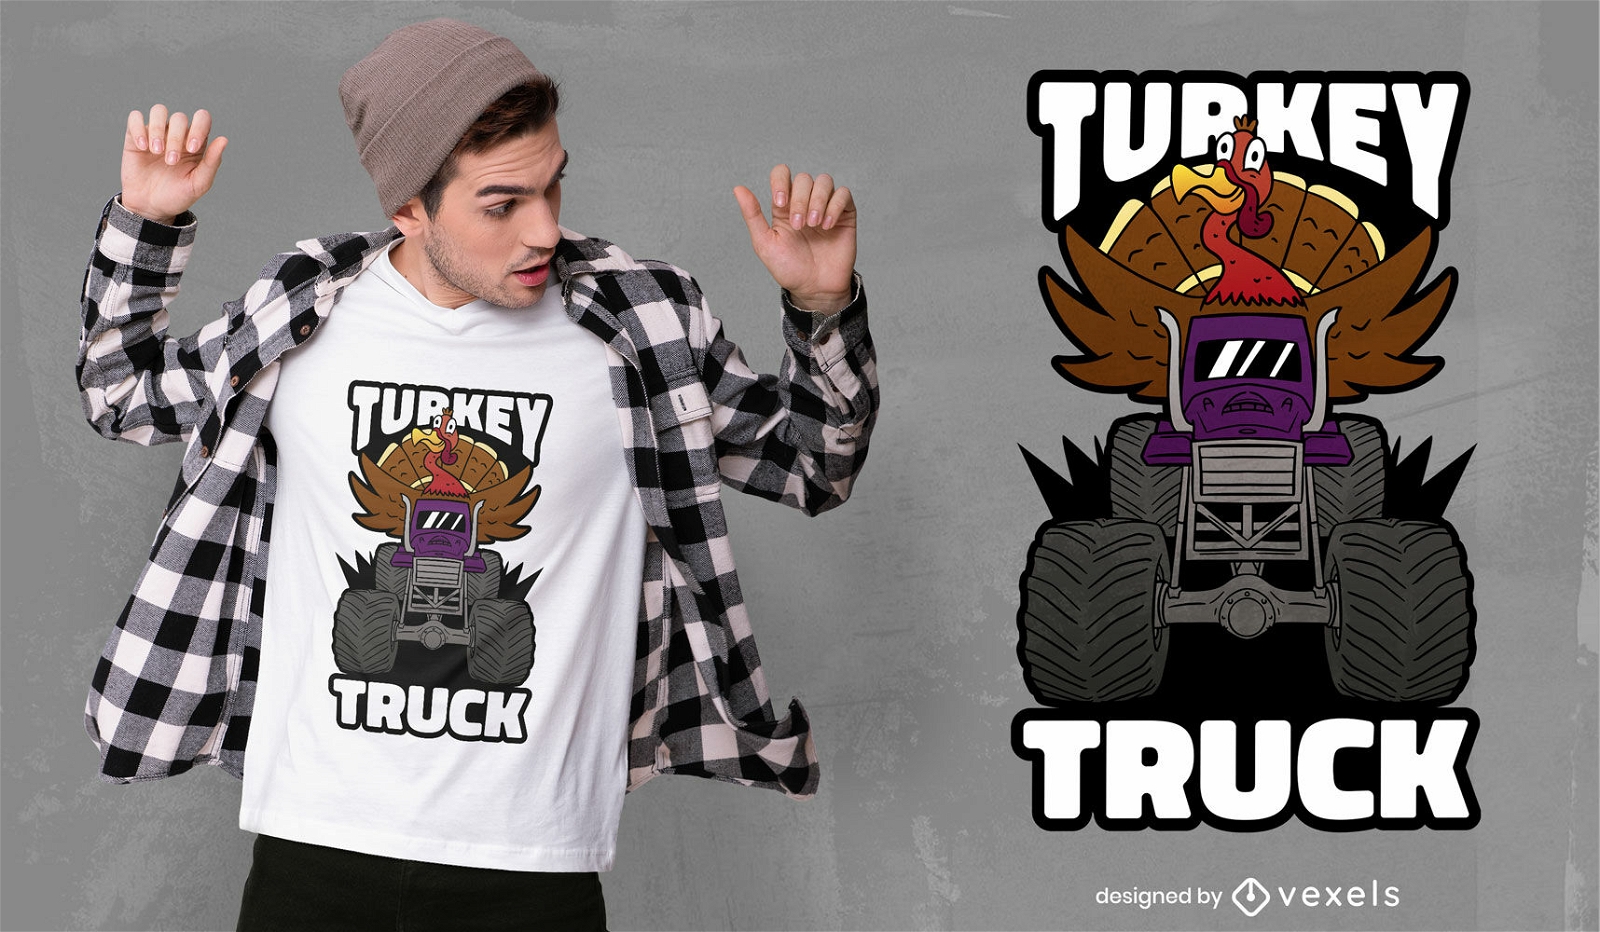 Turkey animal on monster truck t-shirt design